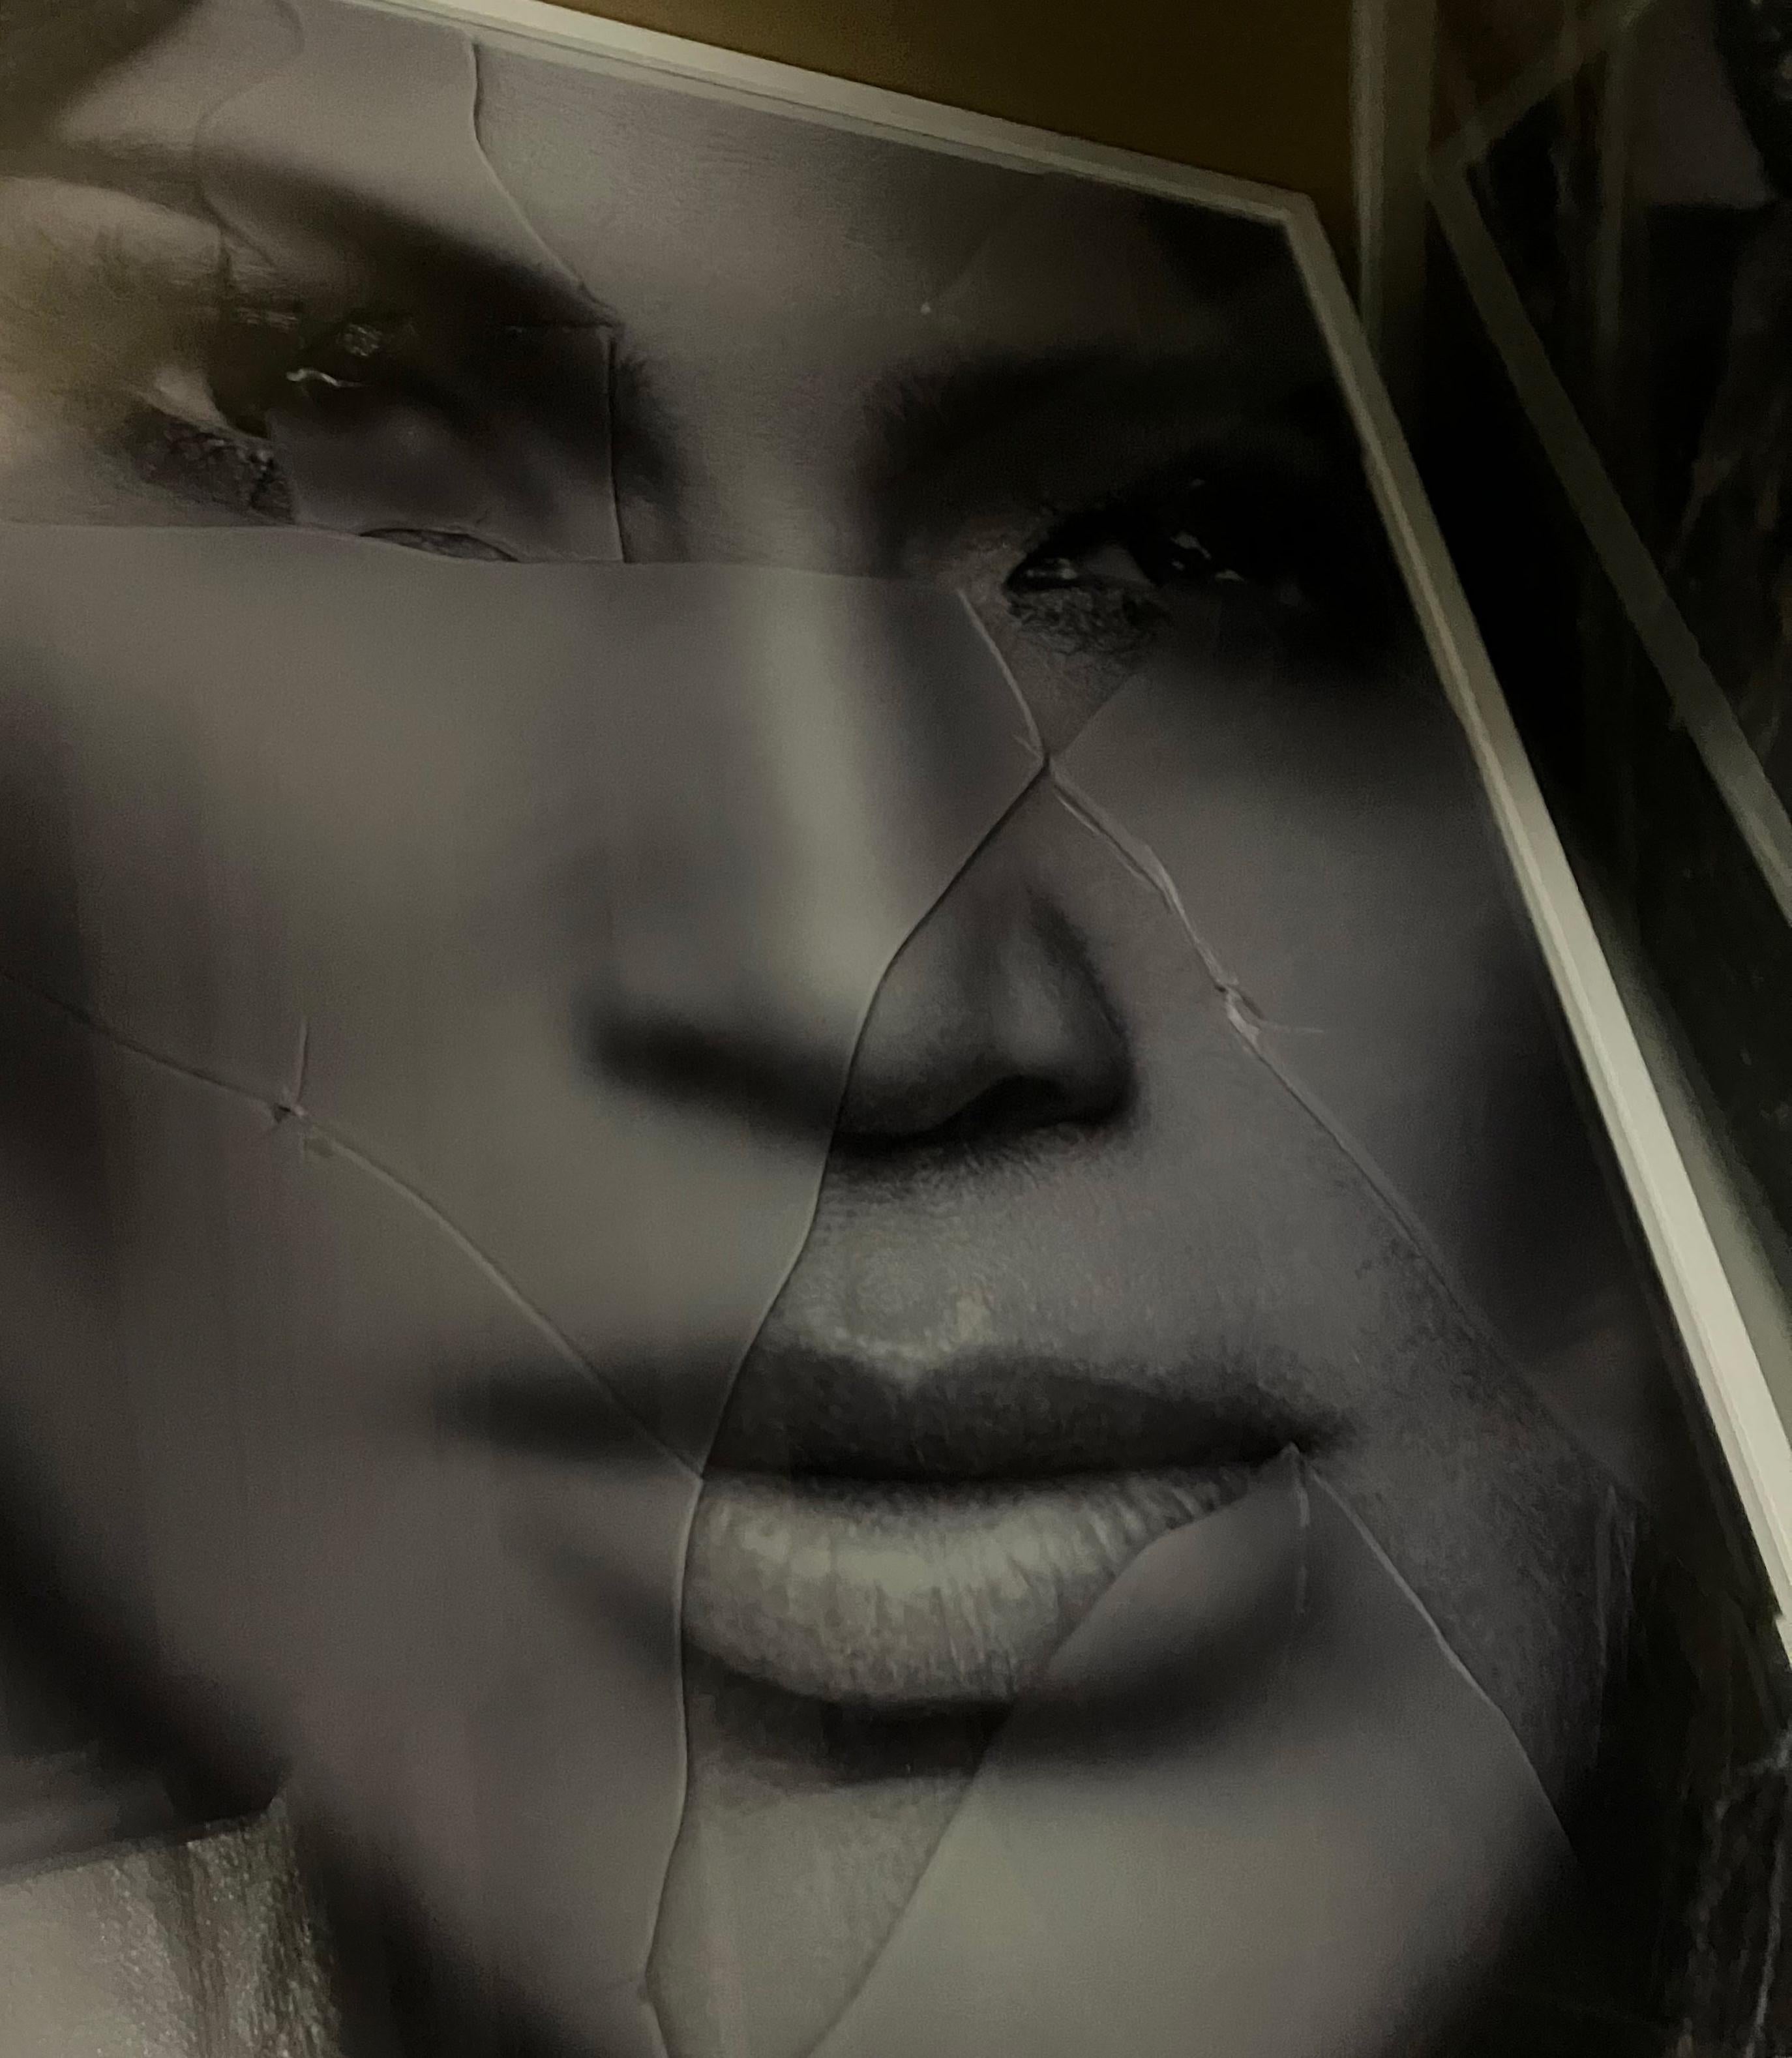 JLO, Jennifer Lopez Porträt von Hunter & Gatti 
Schwarz-Weiß-Fotografie mit Glasscherben oben auf dem Bild.
Bildgröße: 45,2 Zoll. H x 32,5 in. W
Rahmengröße: 52,5 Zoll. H x 39 in. B x 2 in. D
Einzigartig

Die Technik des Künstlers besteht in der